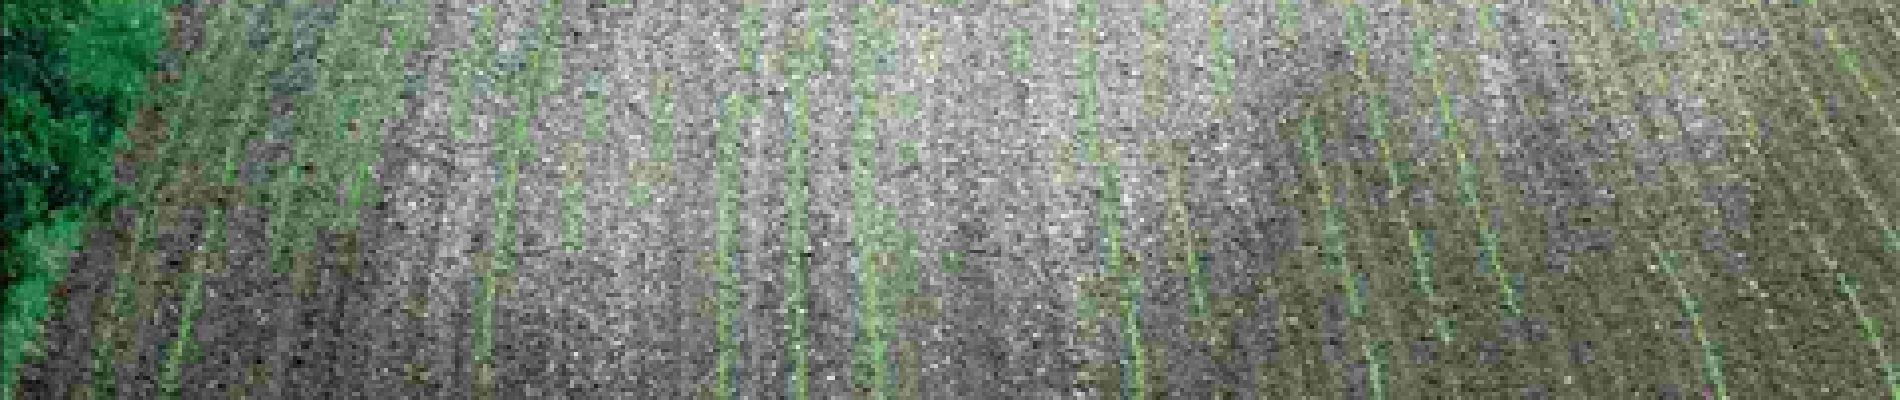 Point d'intérêt Havelange - Le Chêne au Gibet - Photo